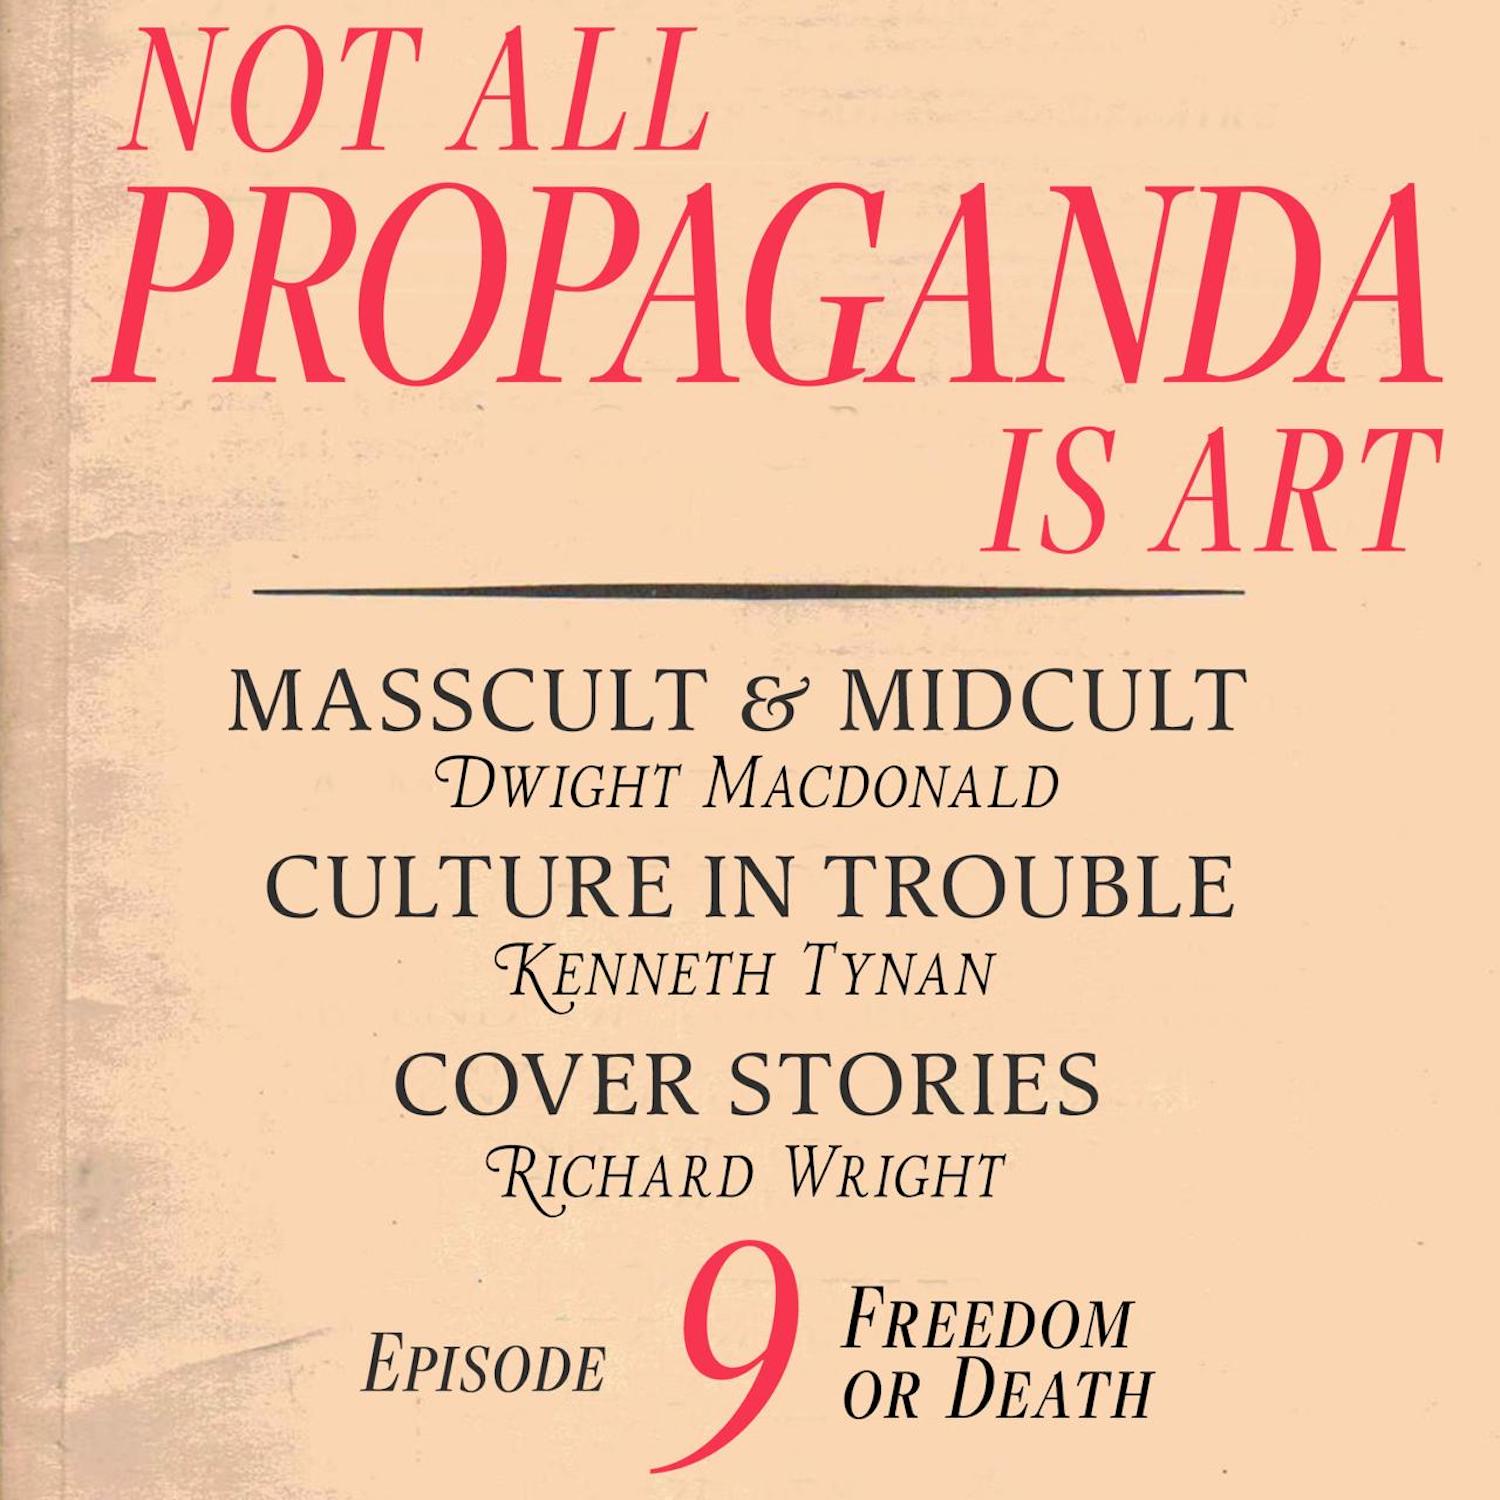 Not All Propaganda is Art 9: Freedom or Death